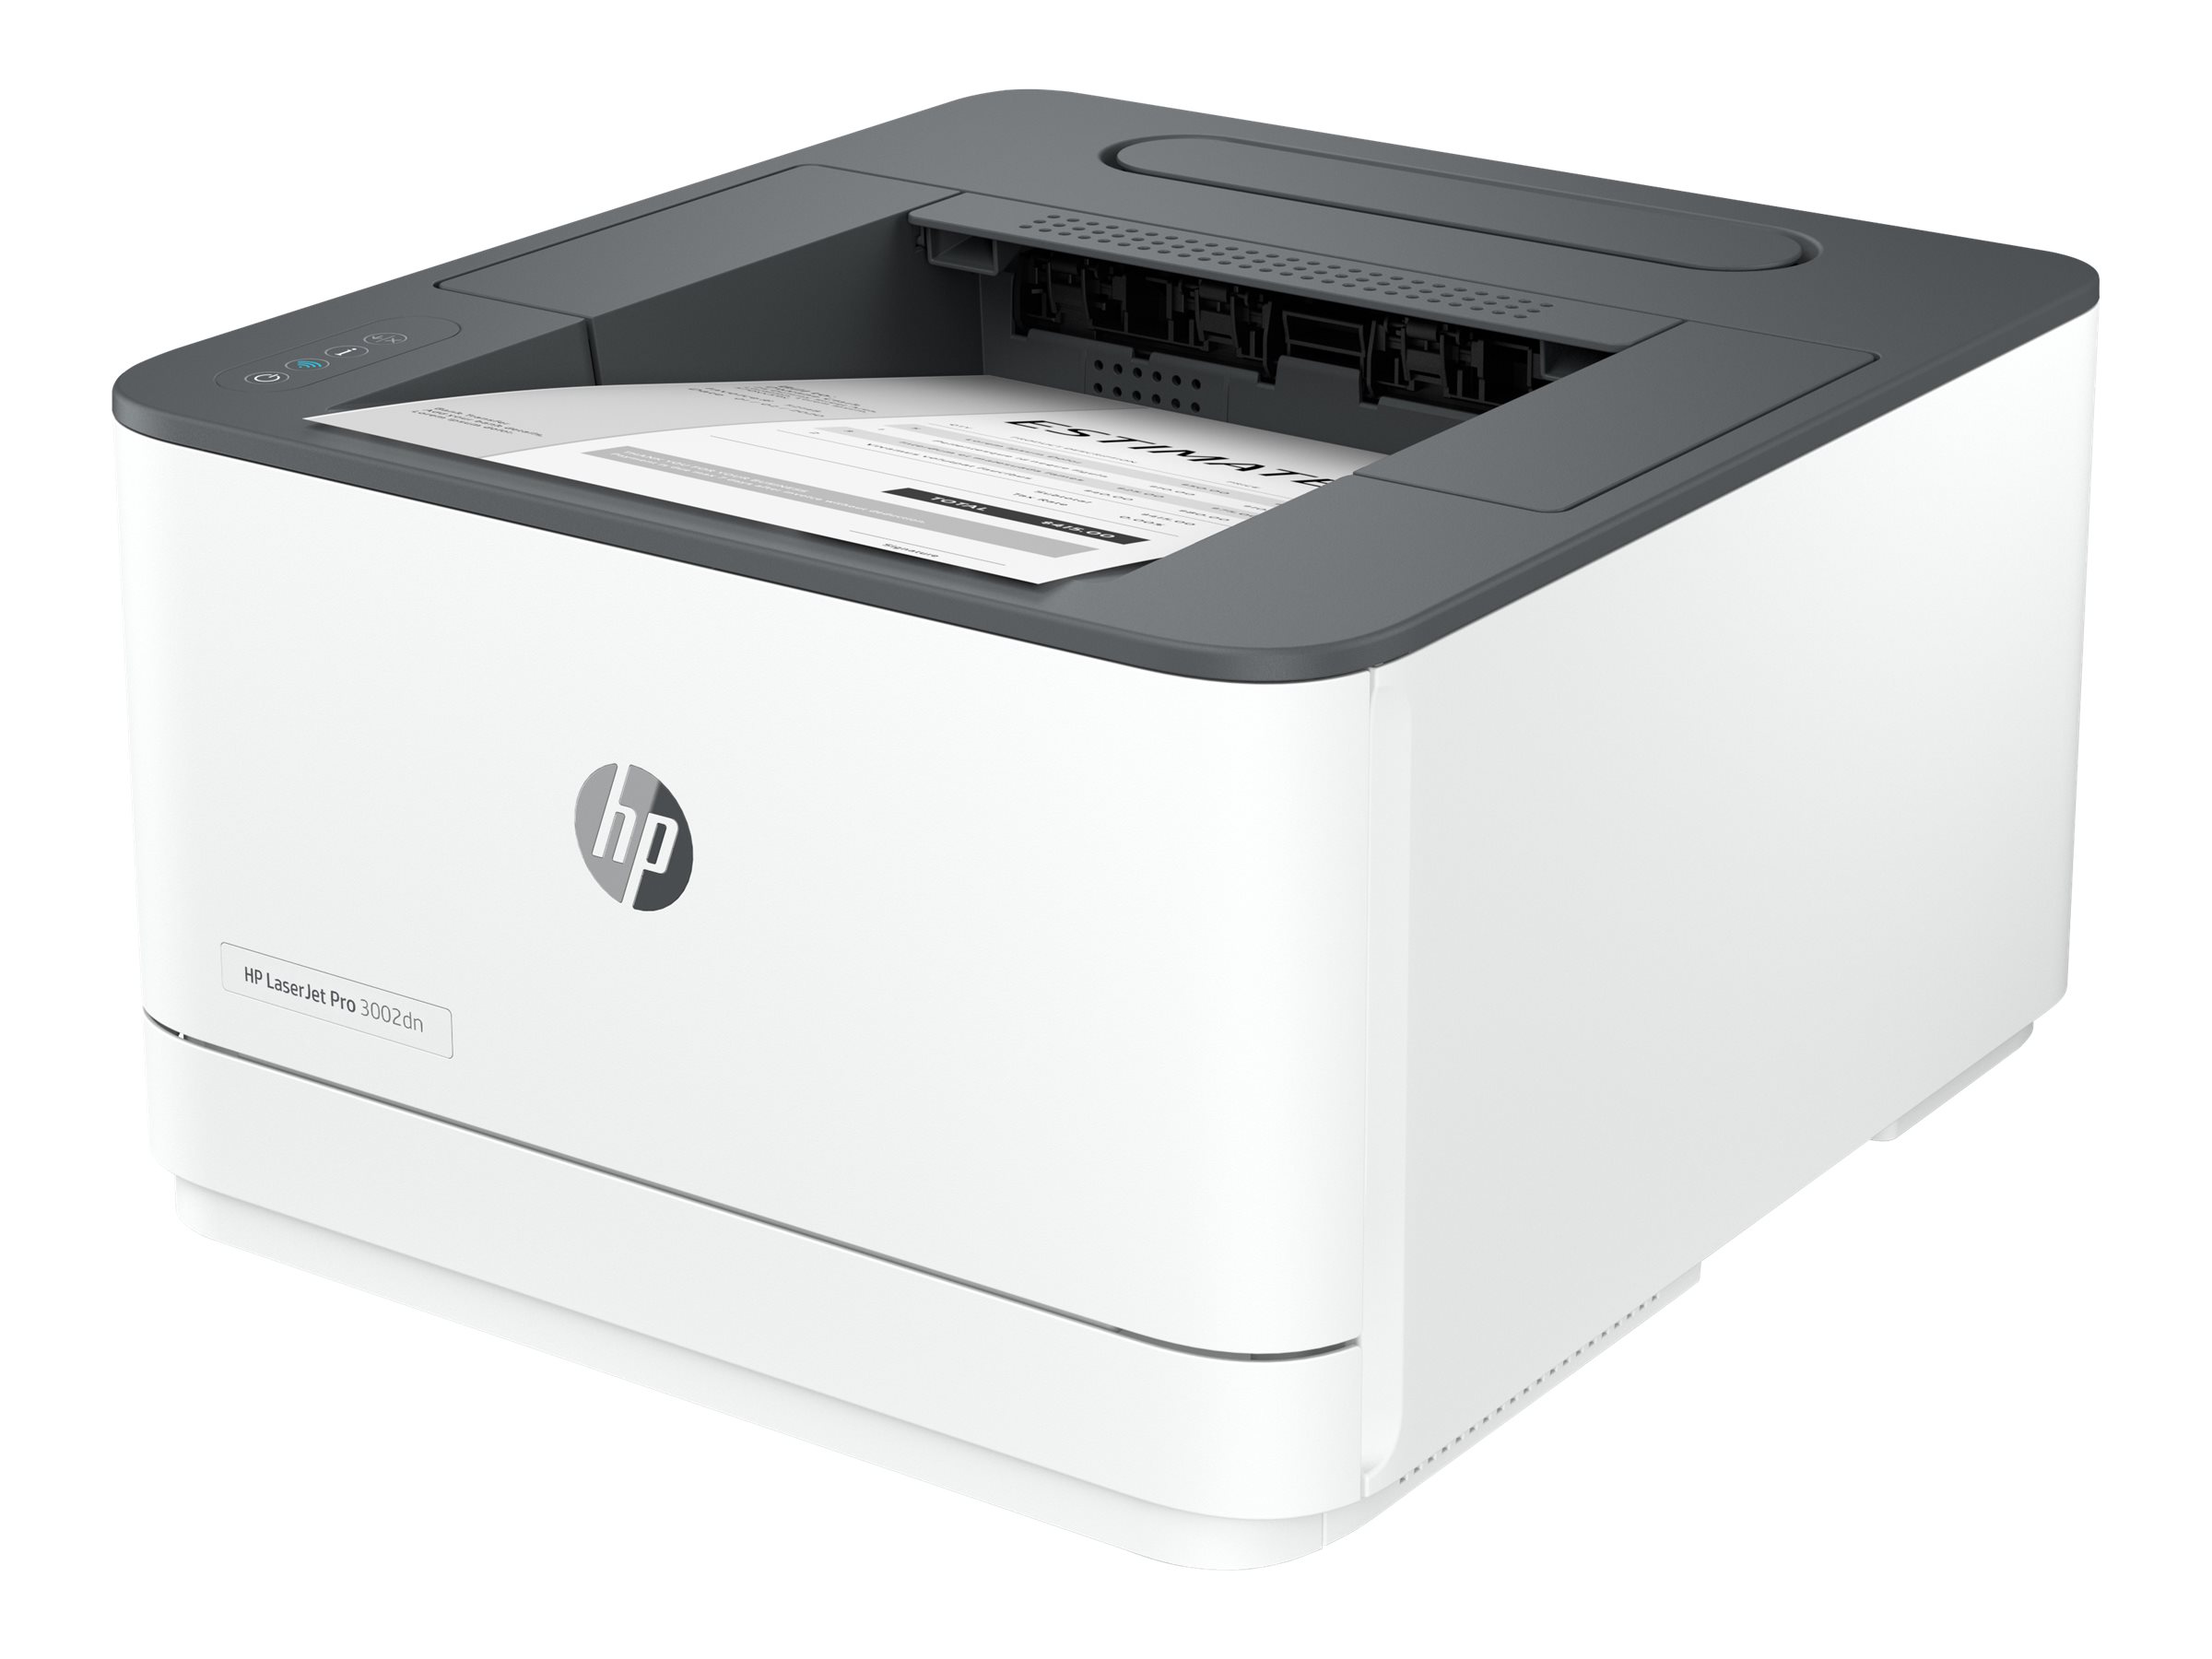 HP 3G651F#B19  HP LaserJet Pro Stampante 3002dn, Bianco e nero, Stampante  per Piccole e medie imprese, Stampa, Stampa fronte/retro